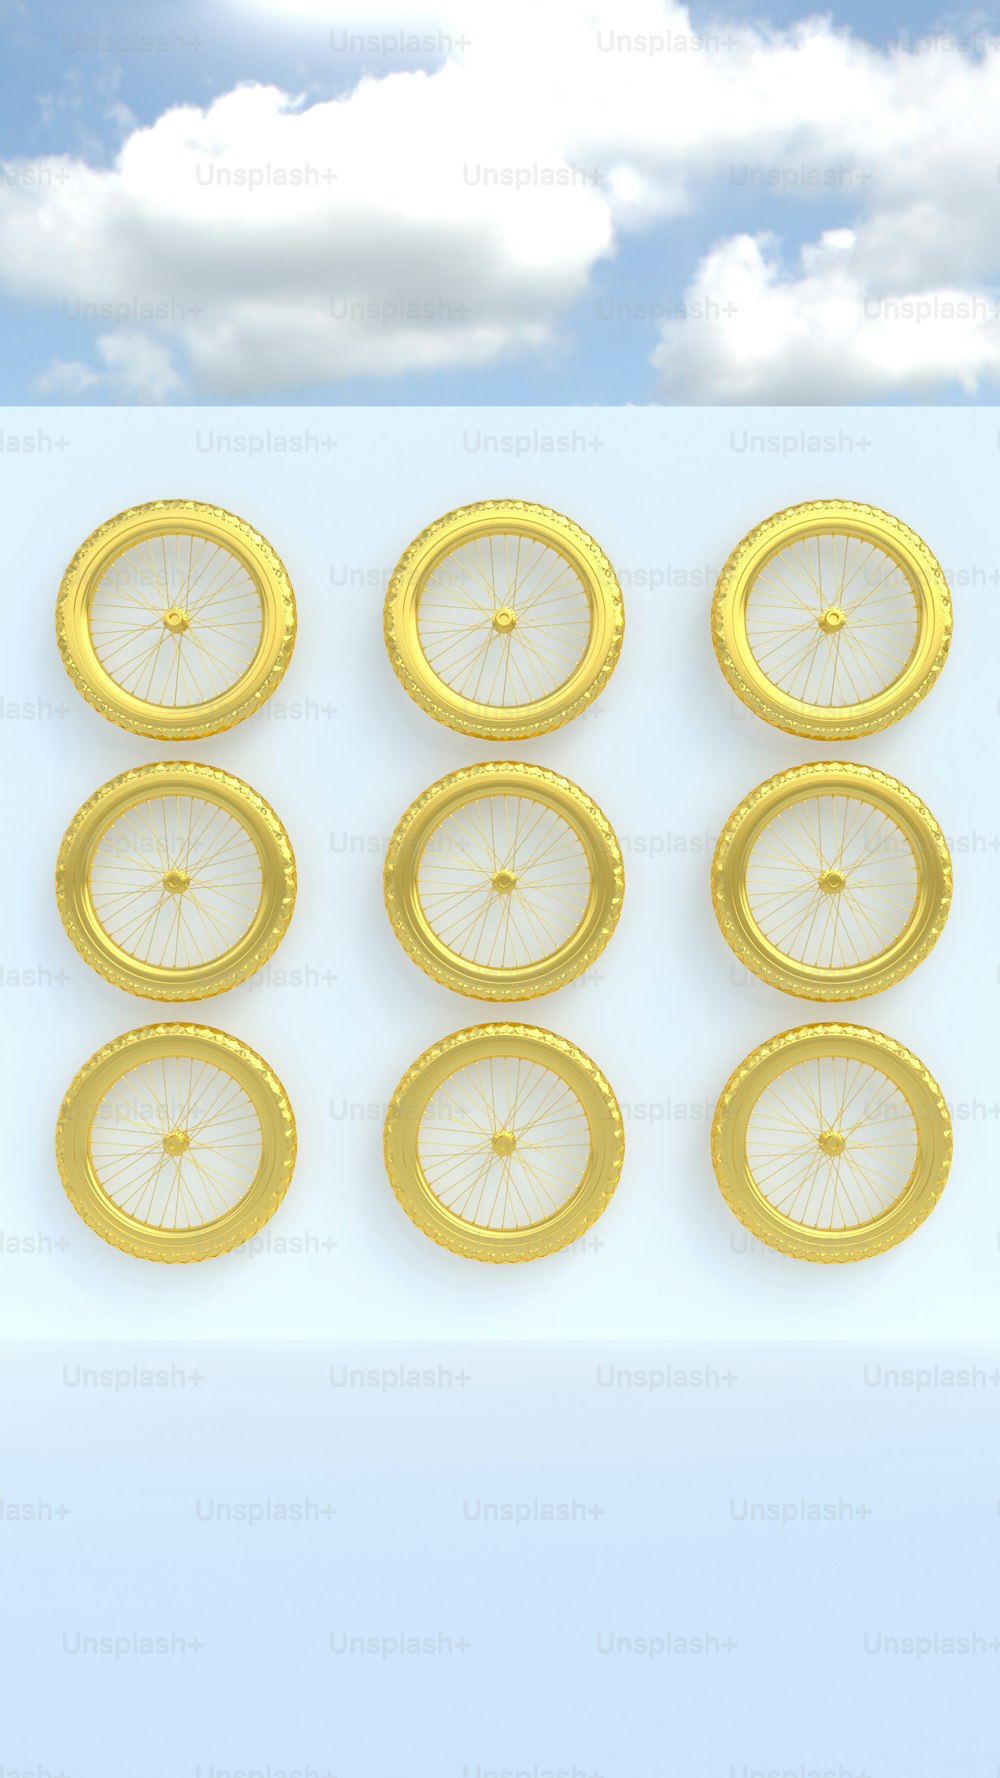 un groupe de frisbees jaunes assis sur une surface blanche